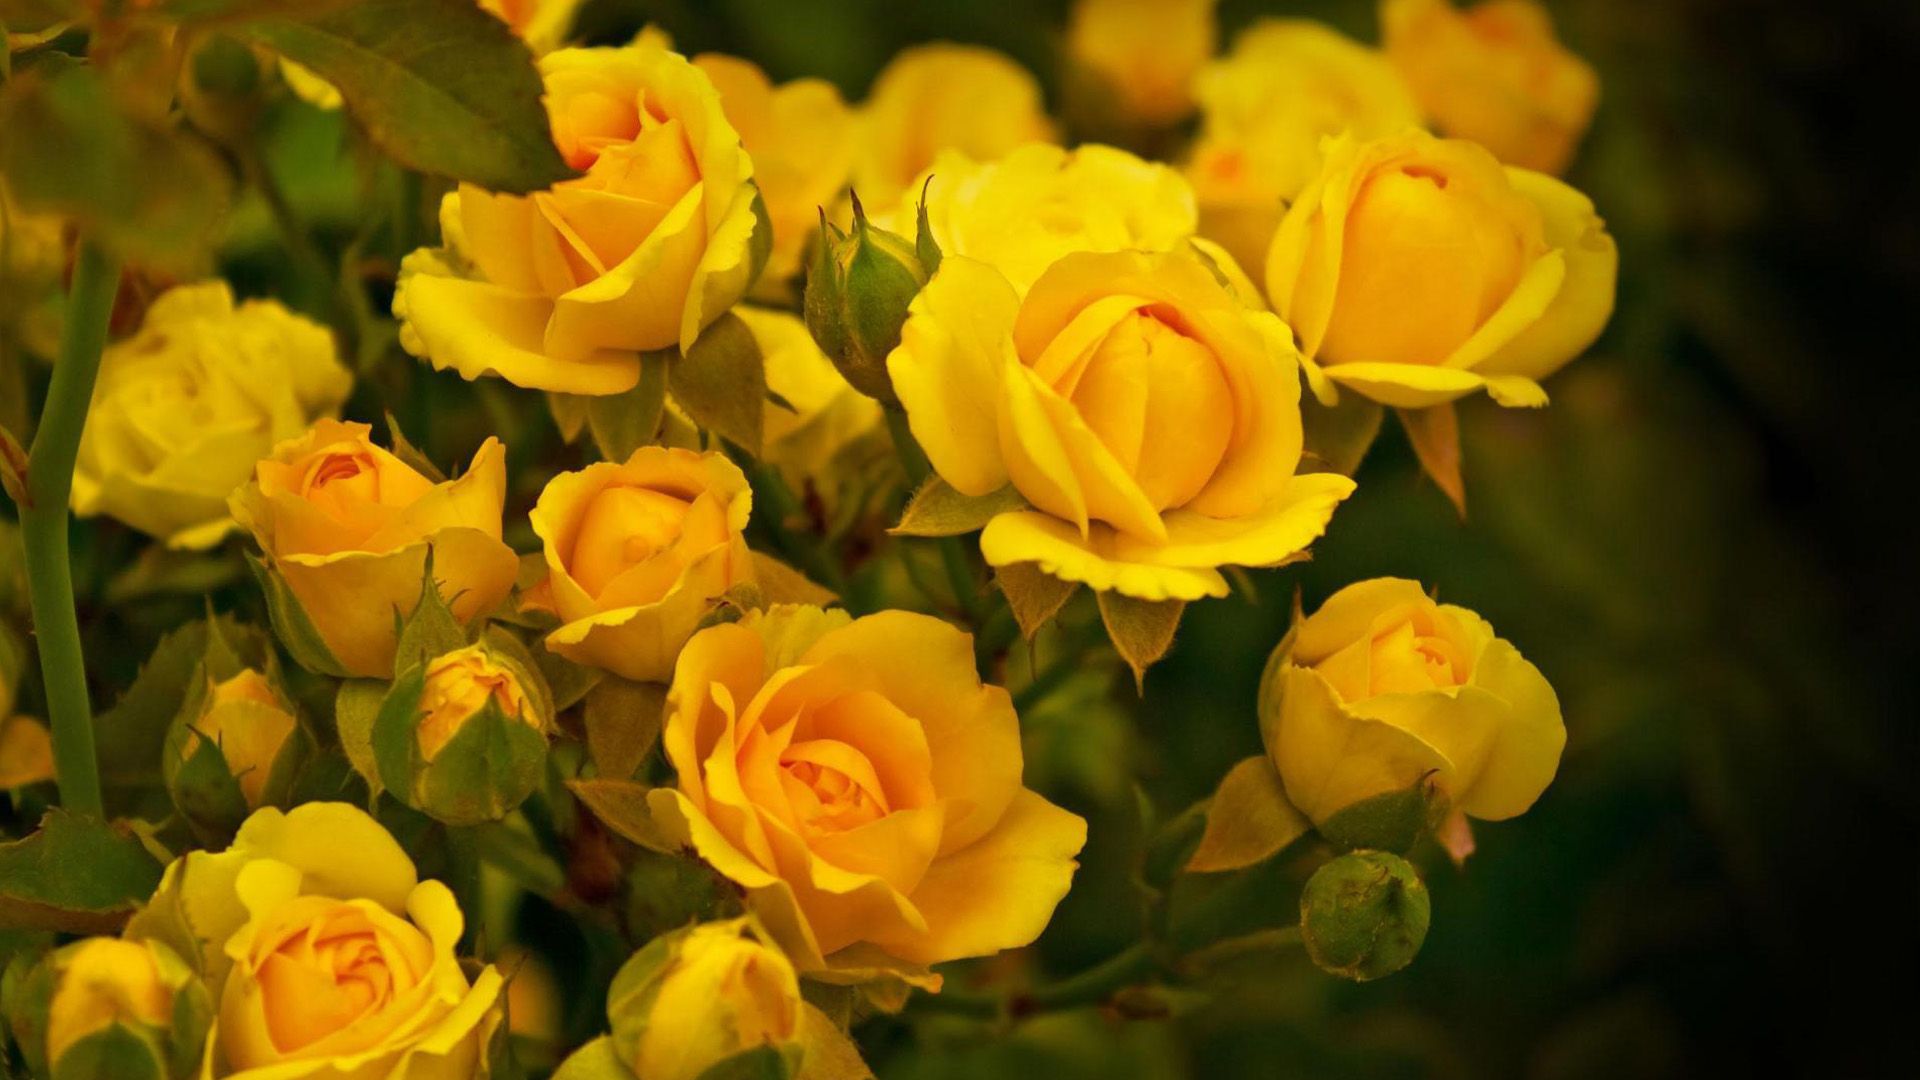 1920x1080 Beautiful Yellow Rose Flowers Wallpaper image free download 1920x1080 on WallpaperBat